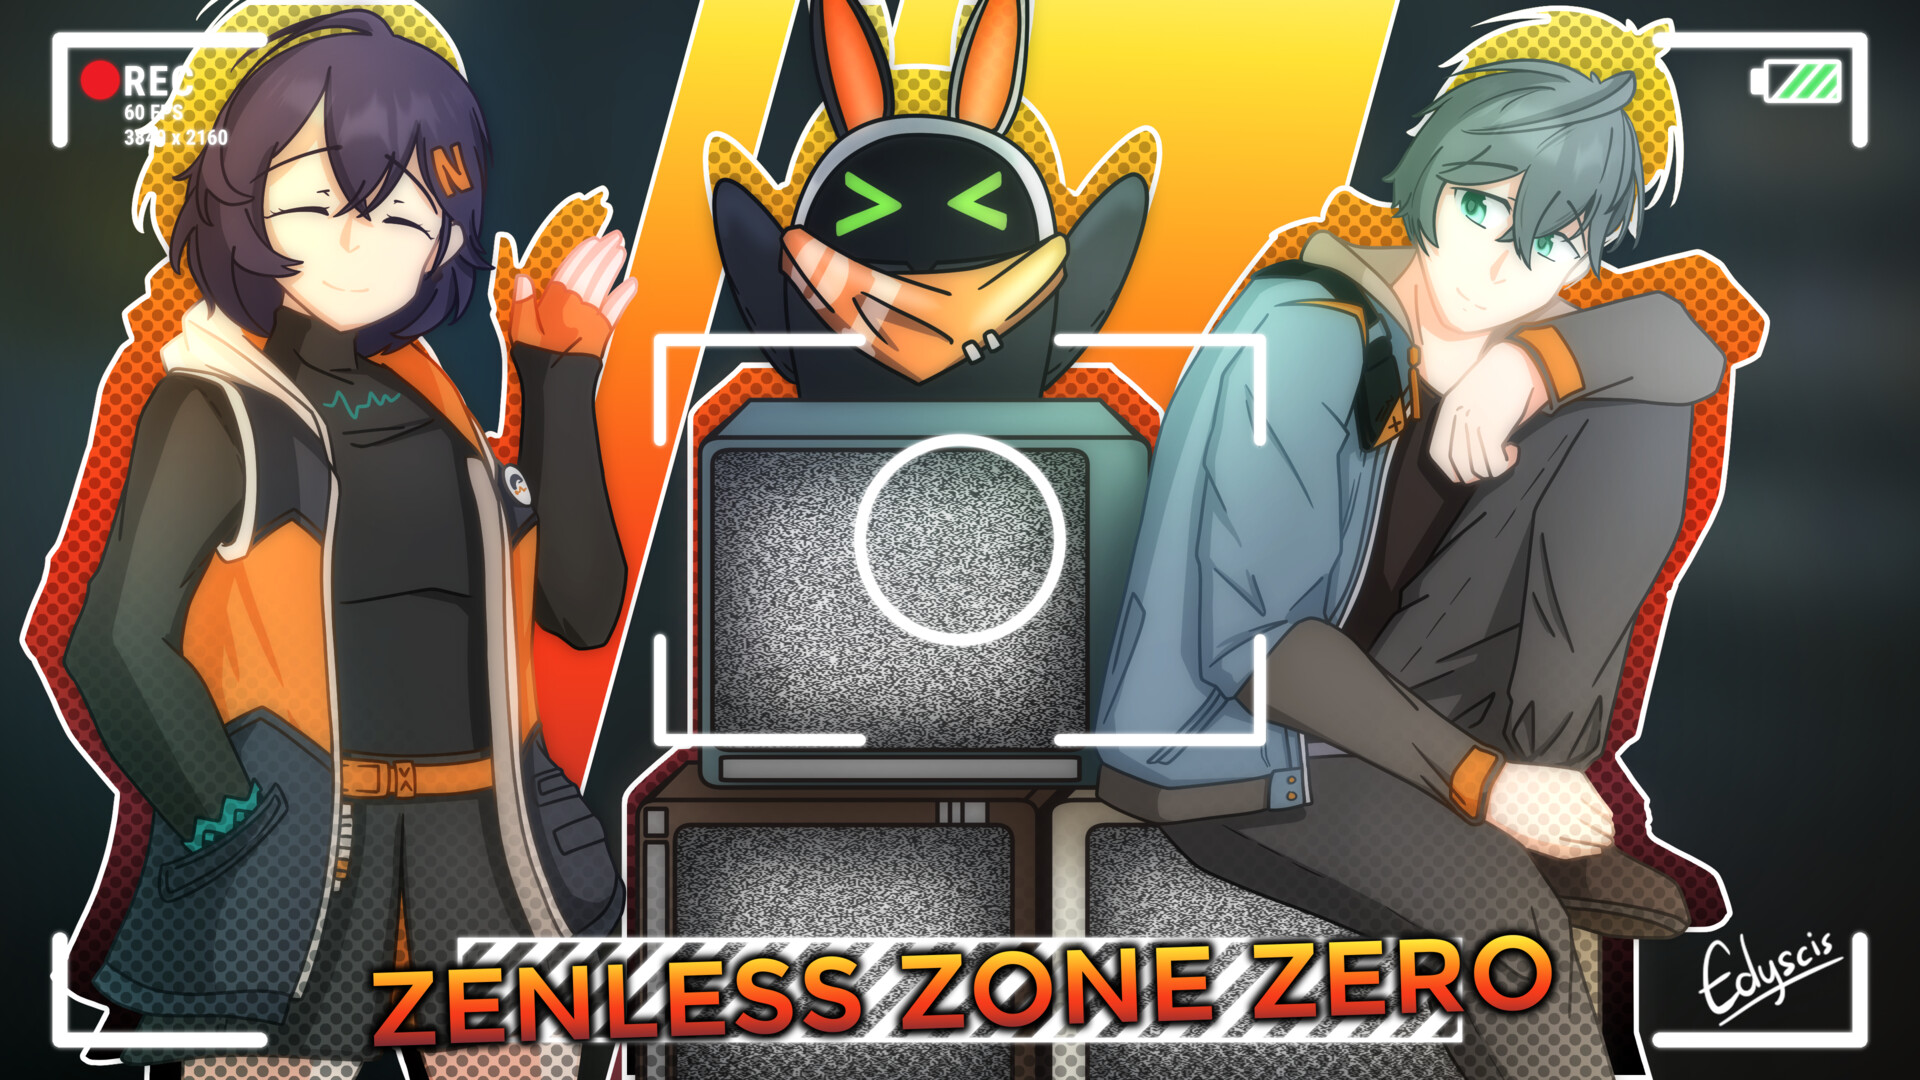 Zenless Zone Zero (Gentle House) by SkullJackXIII on DeviantArt